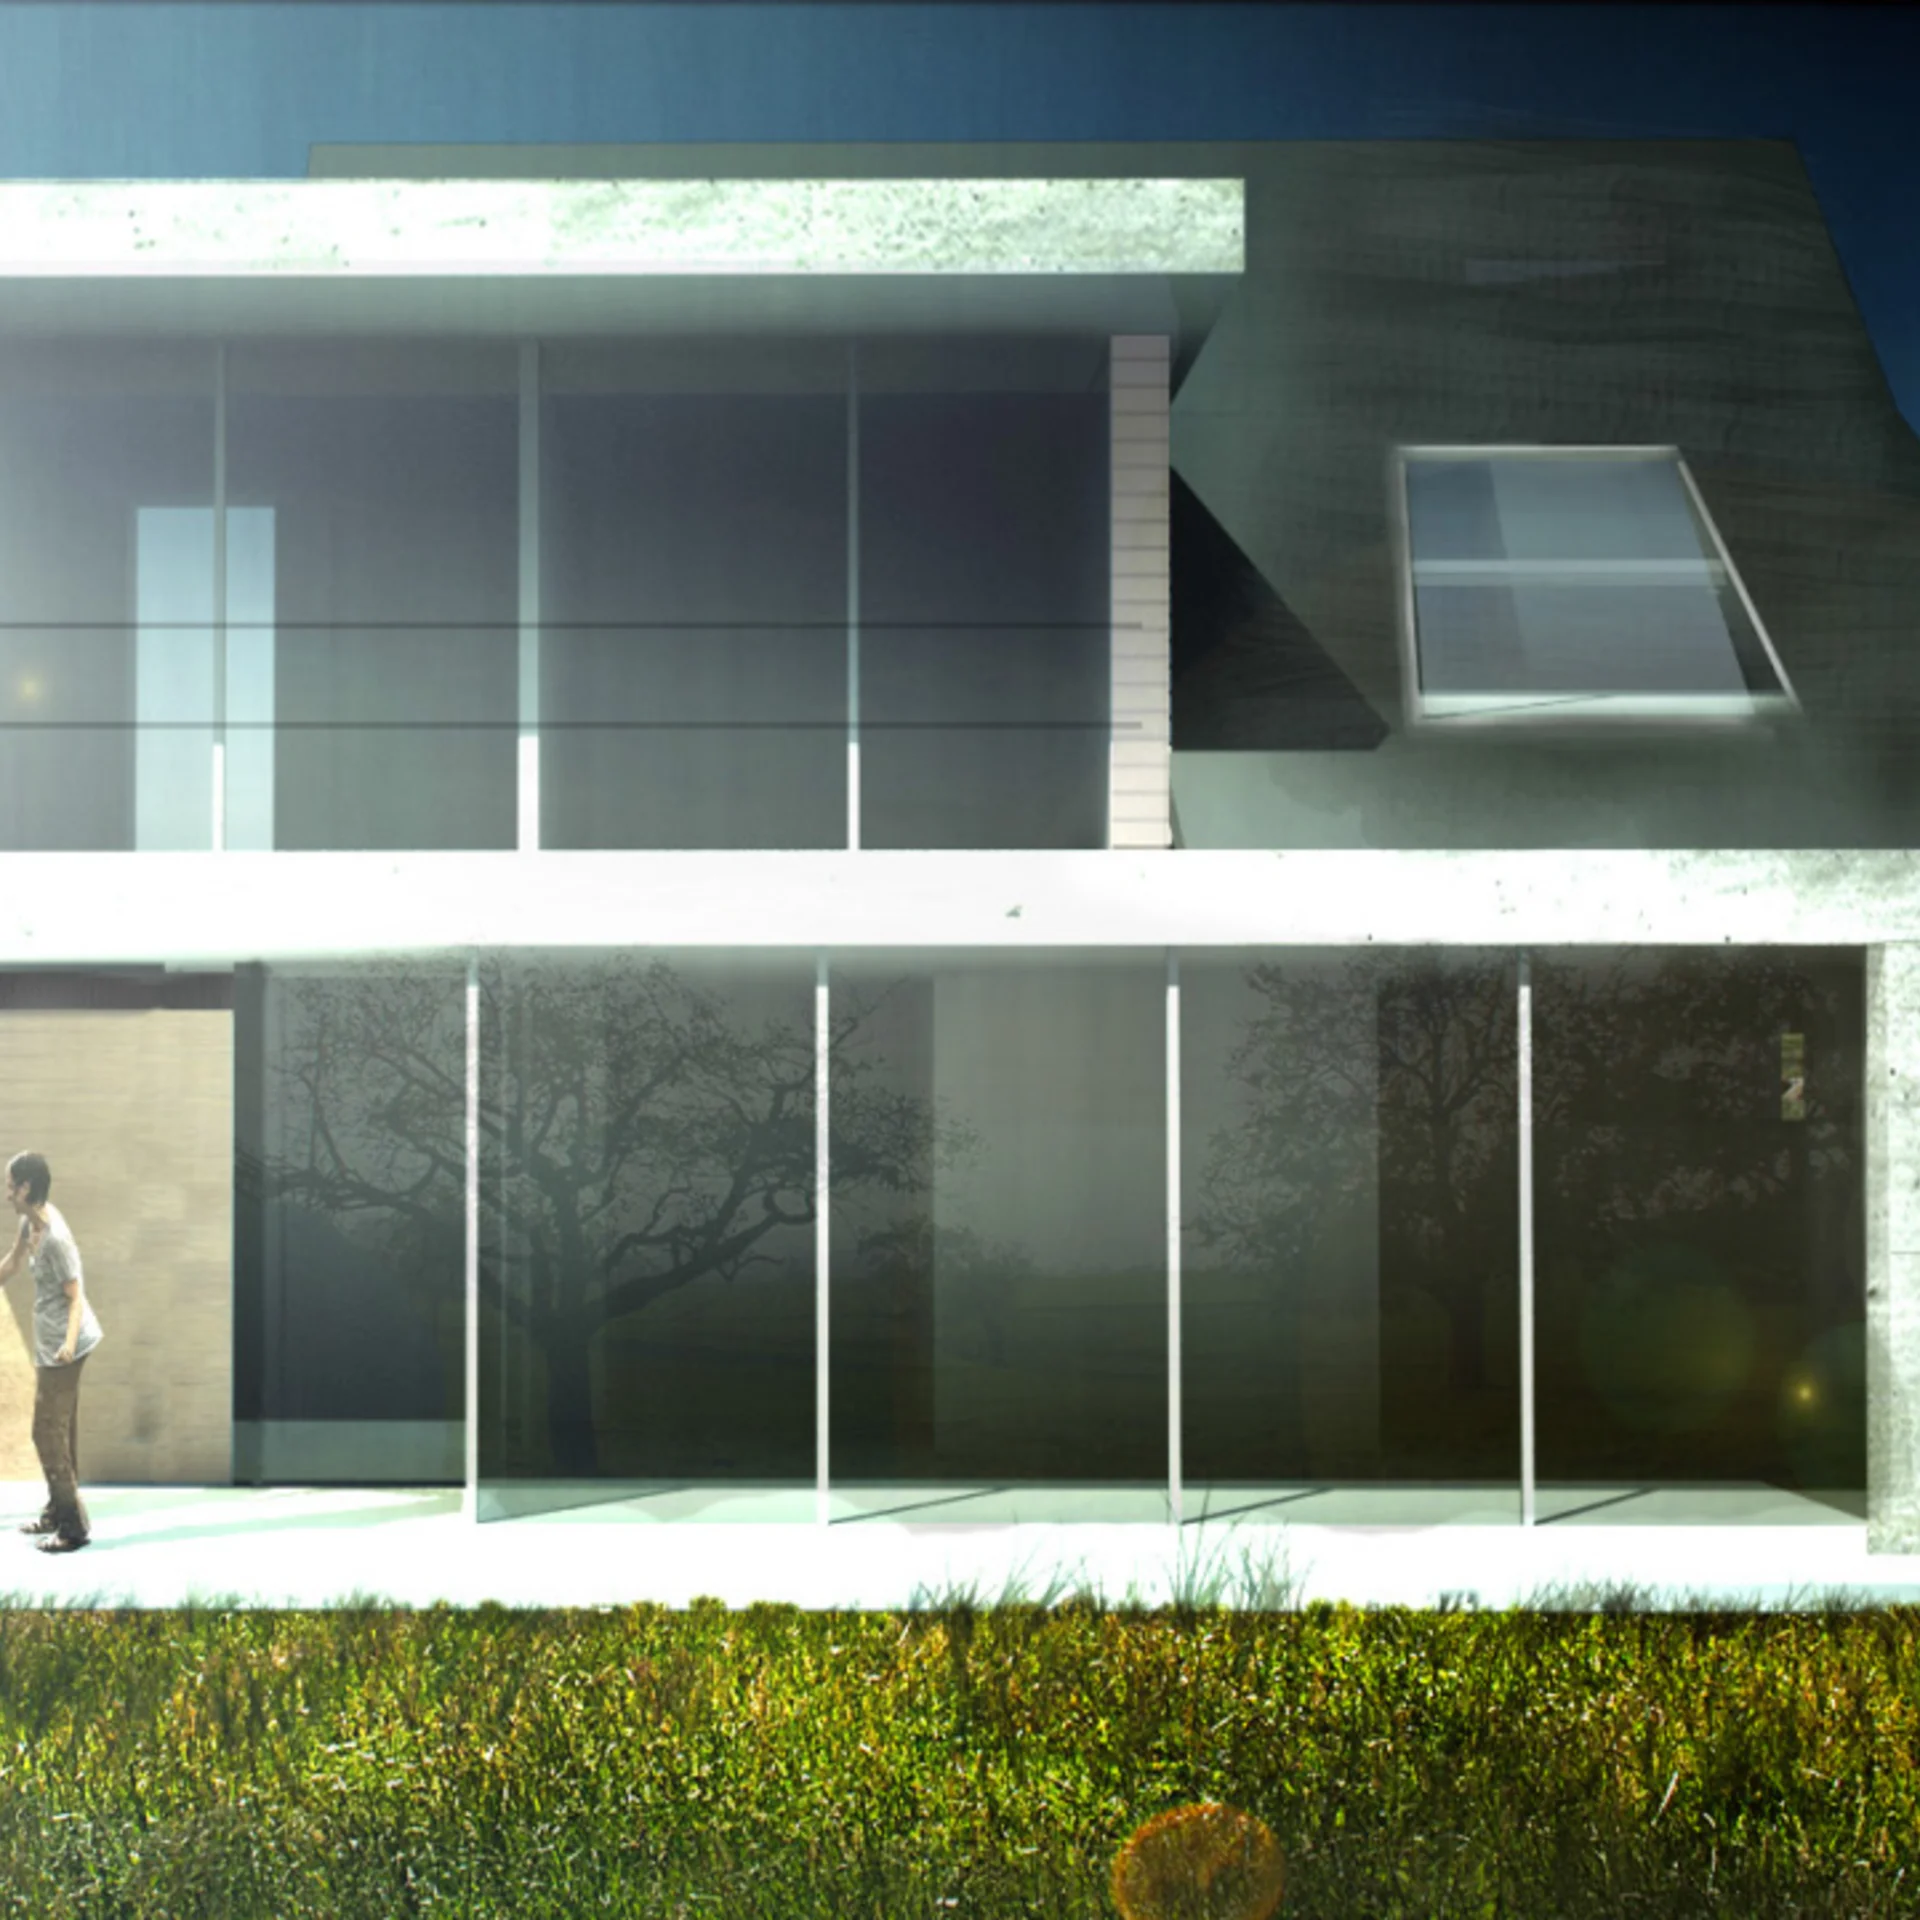 CGI Bild von zweistöckigem Haus mit Fensterfront auf beiden Stockwerken